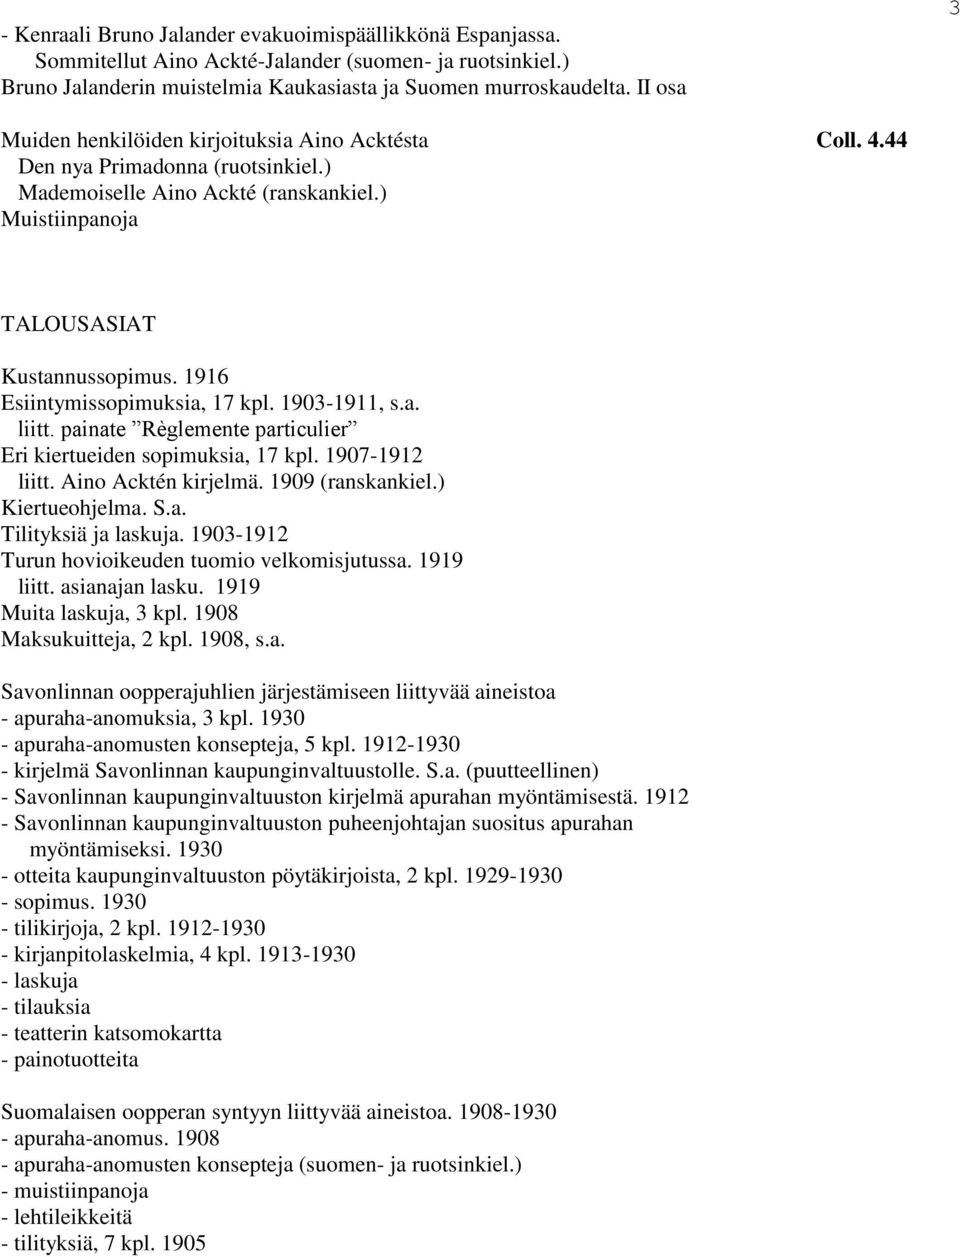 1916 Esiintymissopimuksia, 17 kpl. 1903-1911, s.a. liitt. painate Règlemente particulier Eri kiertueiden sopimuksia, 17 kpl. 1907-1912 liitt. Aino Acktén kirjelmä. 1909 (ranskankiel.) Kiertueohjelma.